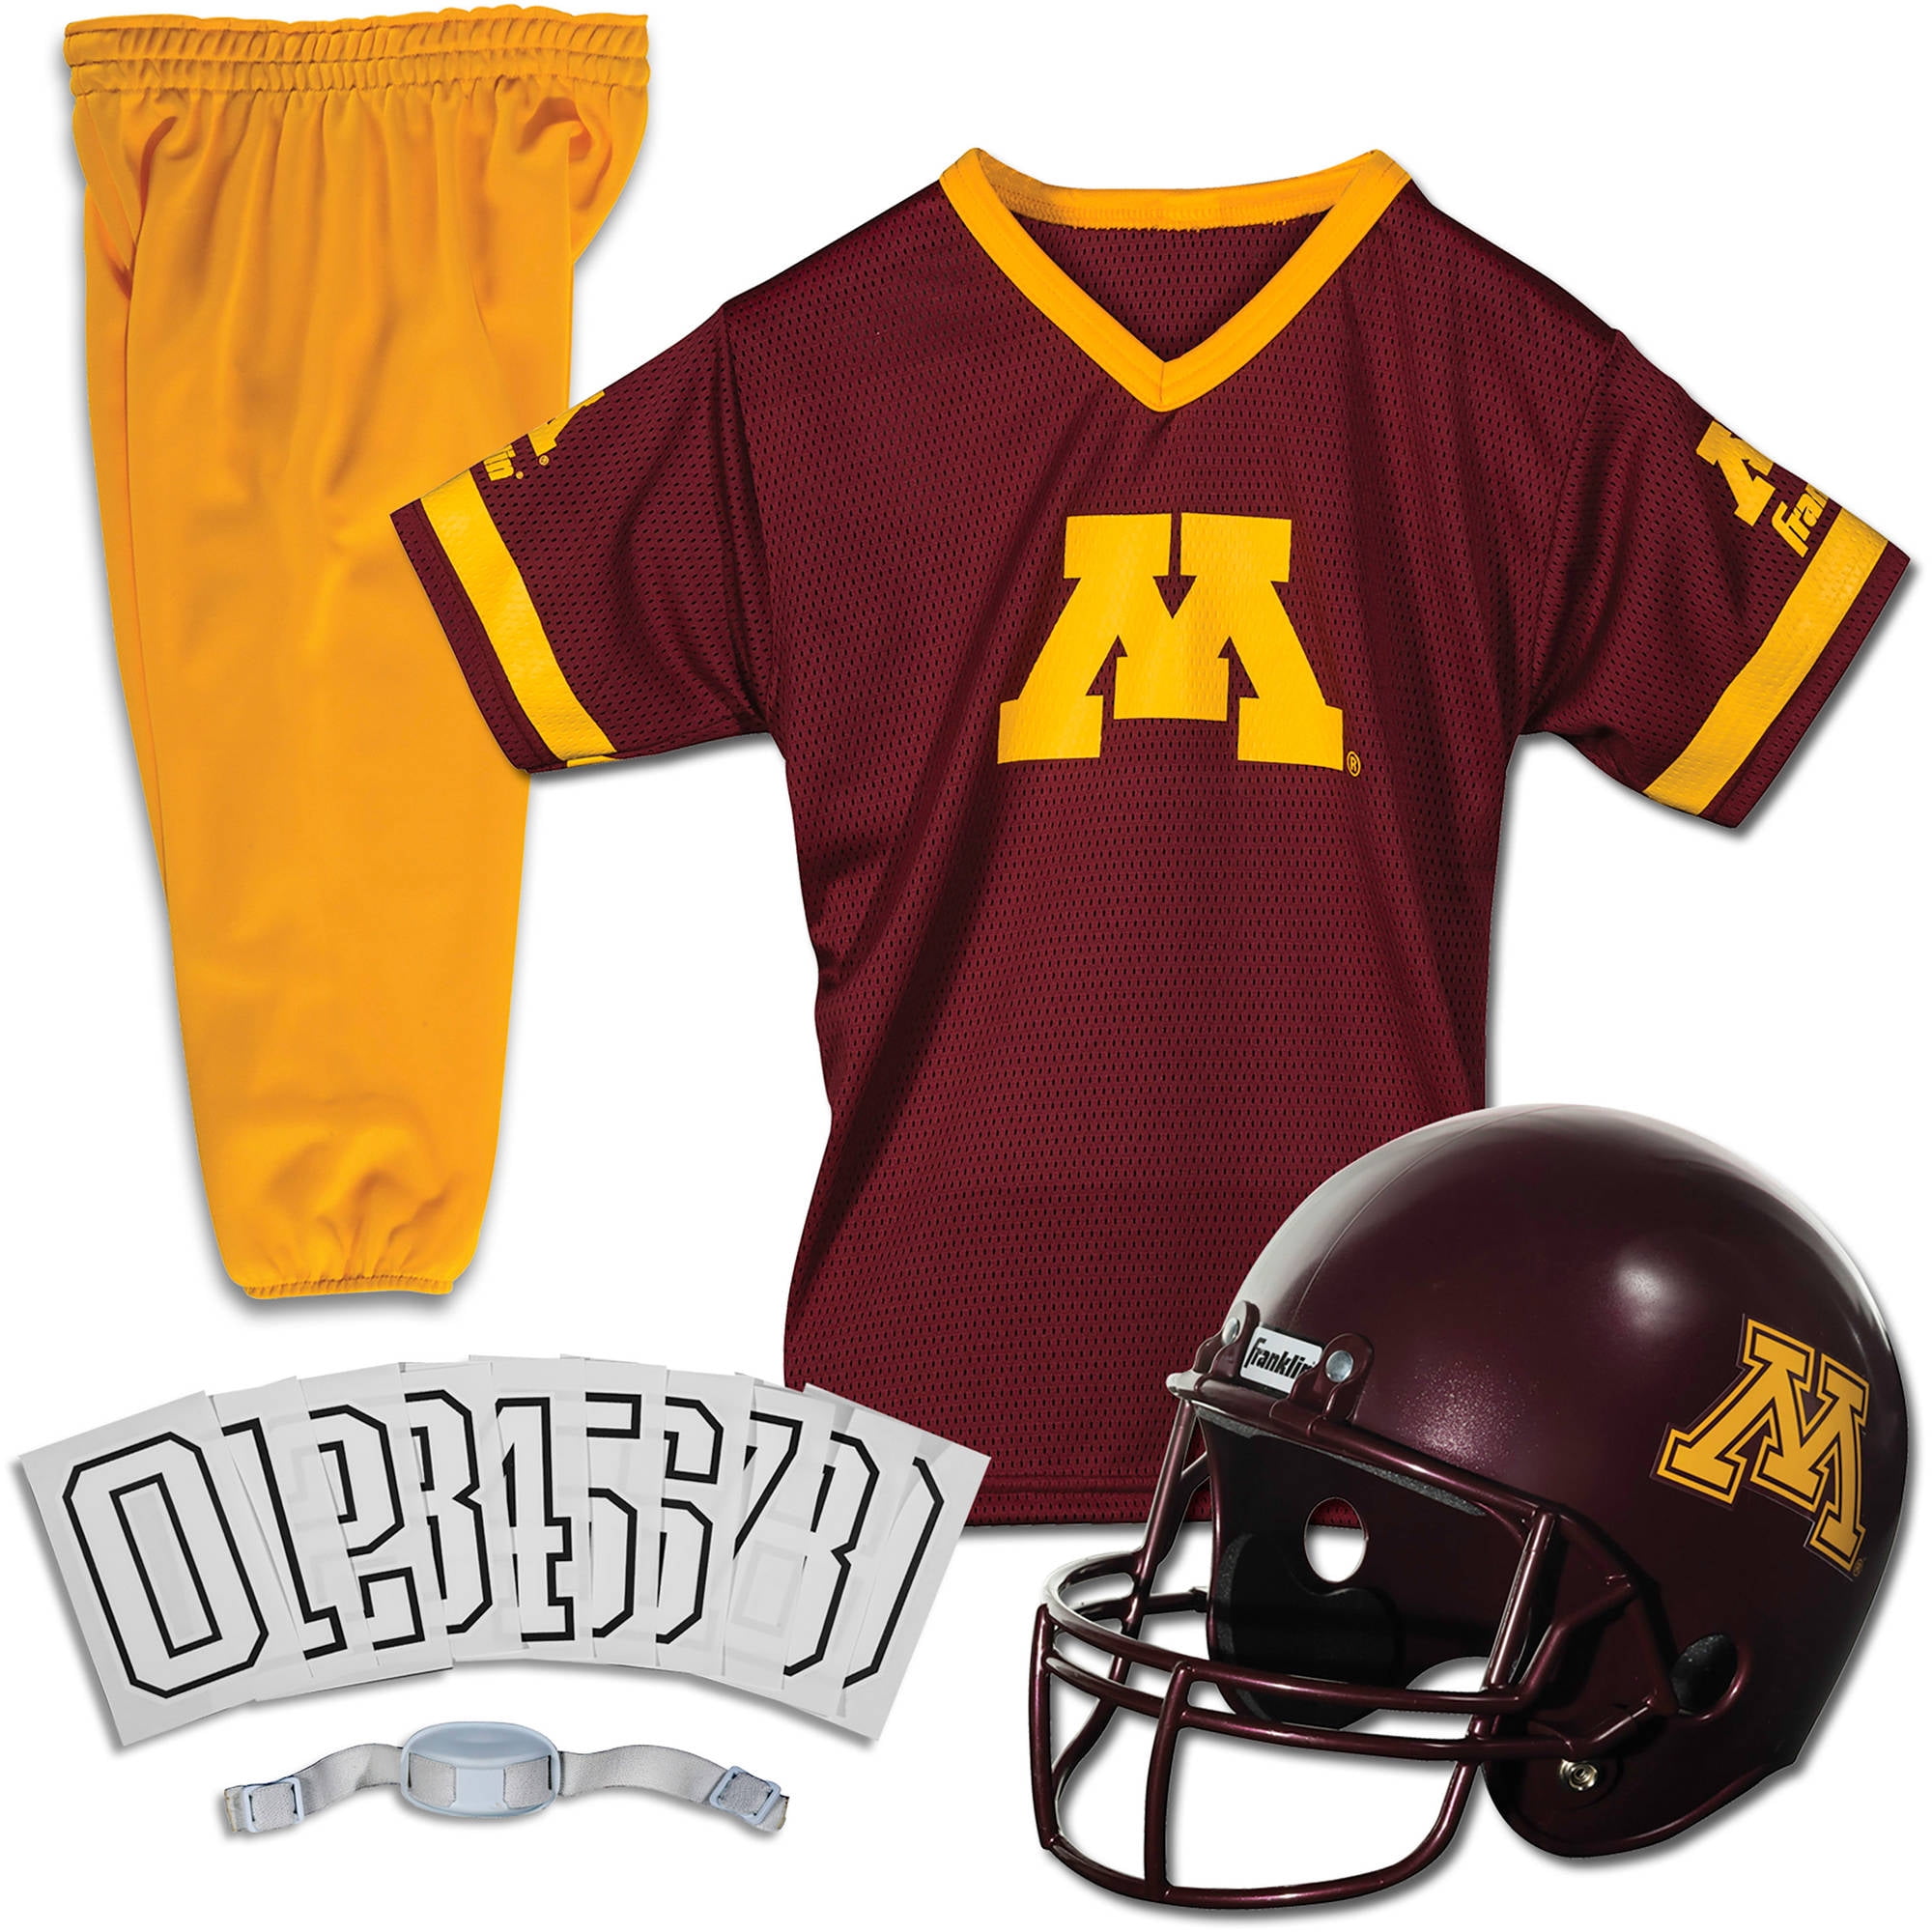 Minnesota Golden Gophers Football Team uniforms